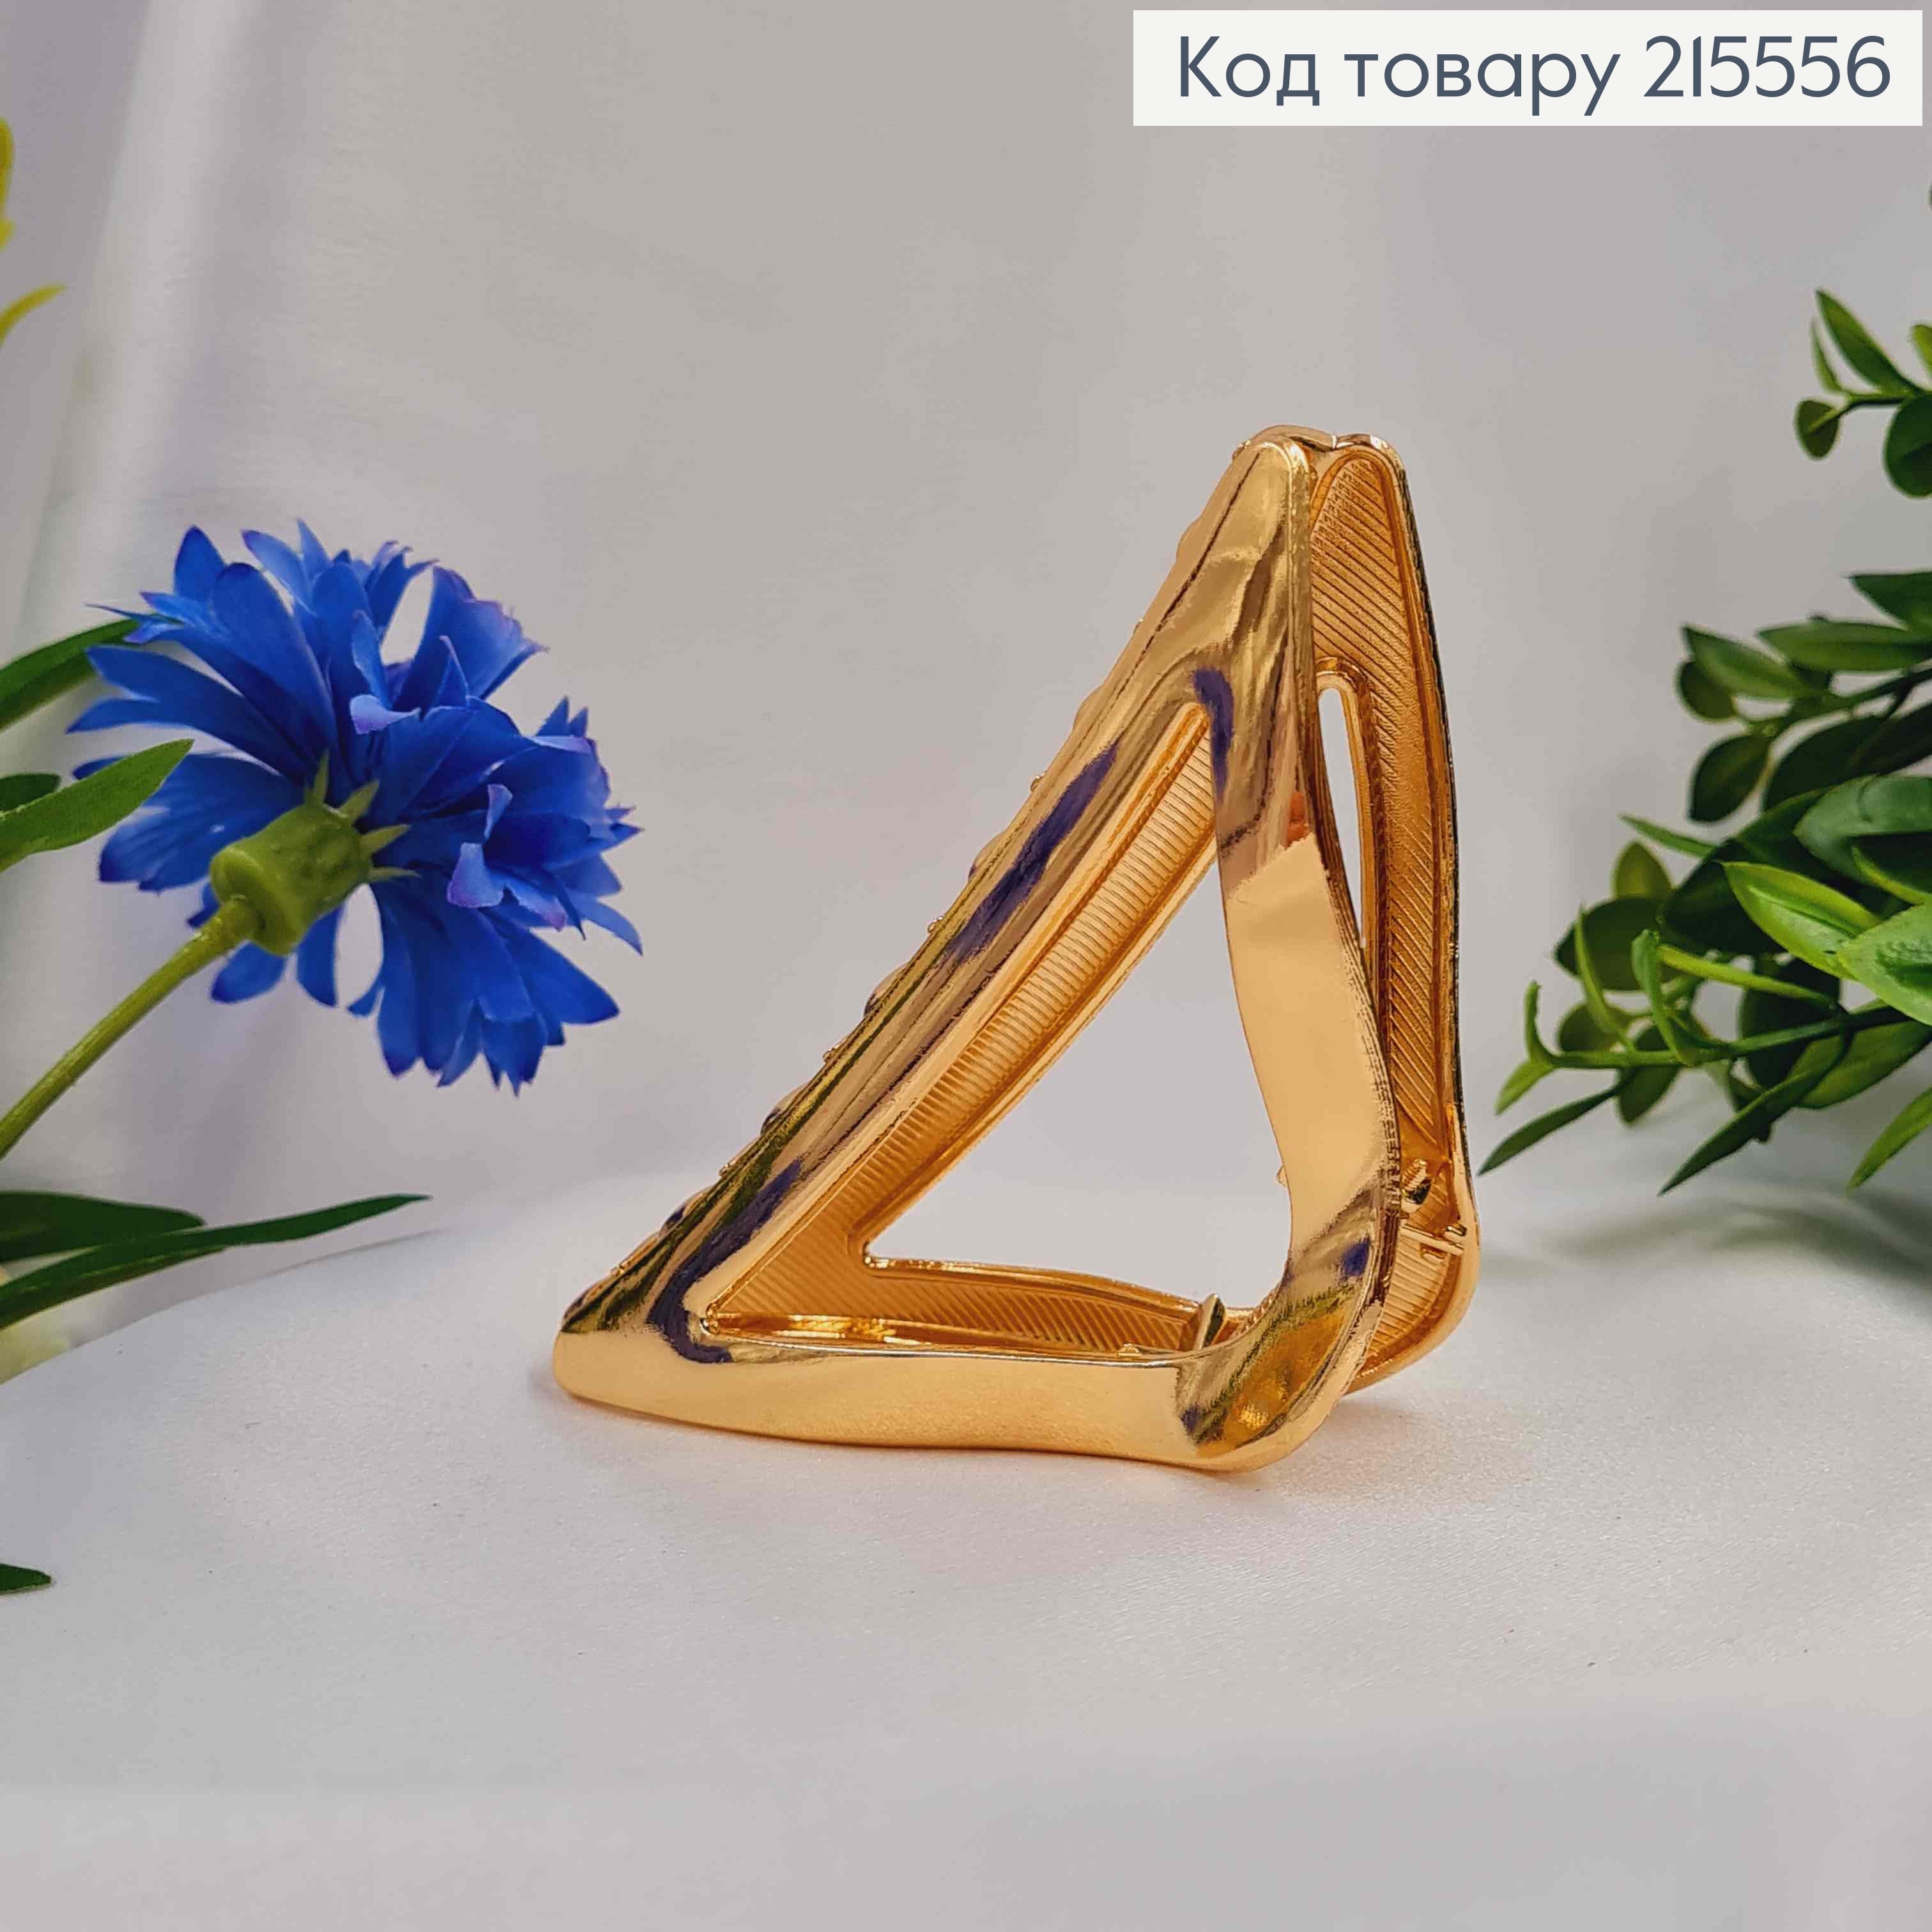 Краб металл Золотого цвета, треугольный, 10см 215556 фото 2